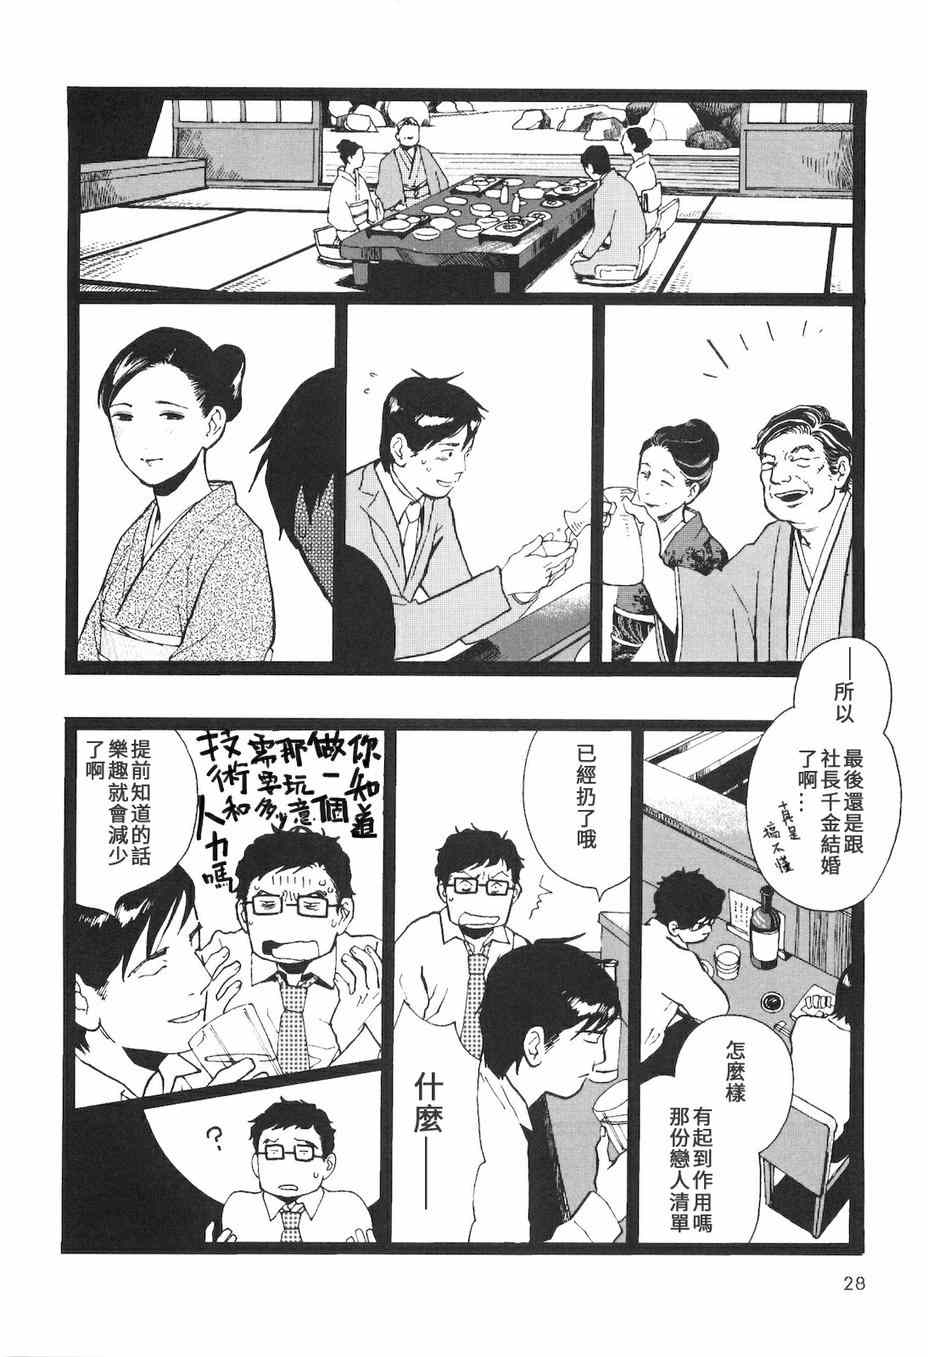 《抽屉里的温室箱》漫画 07恋人清单